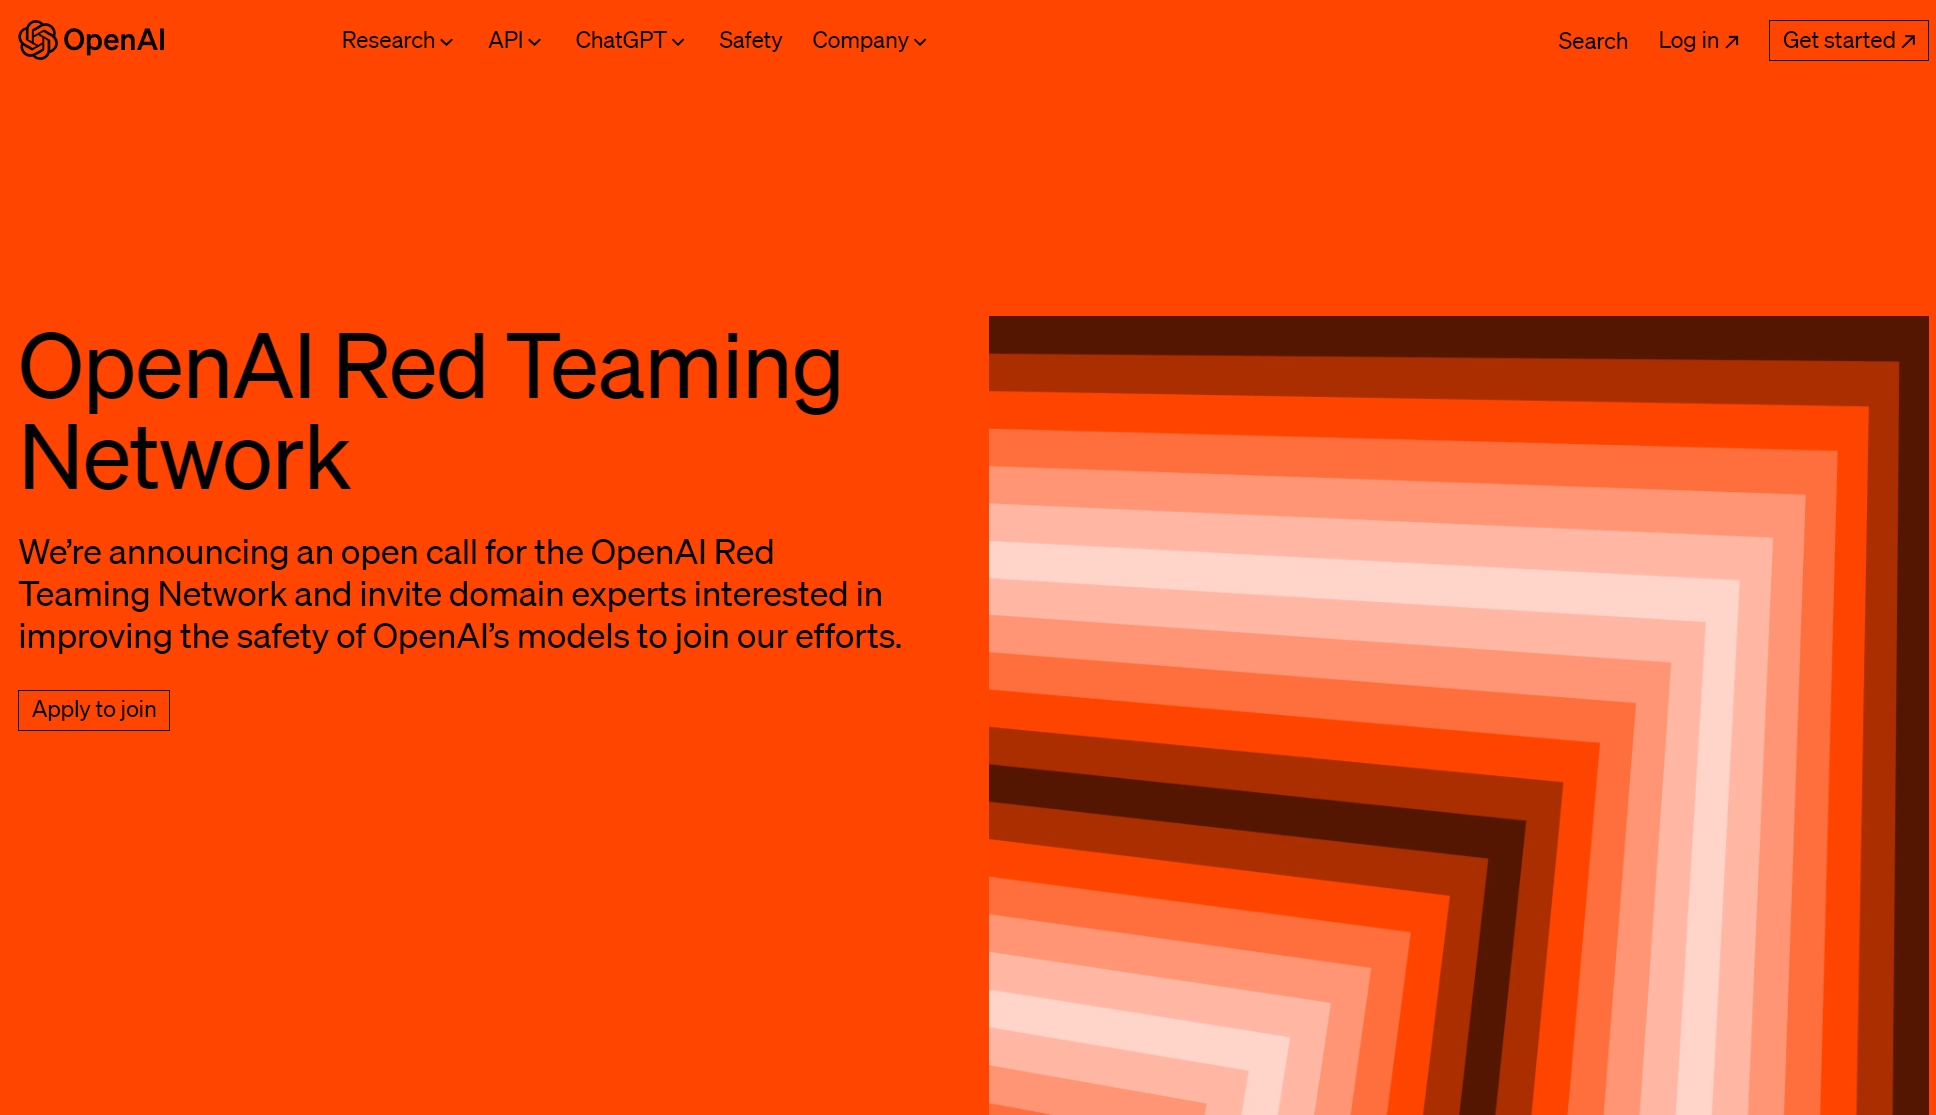 OpenAI宣布公开招募“红队”网络 面向AI的超级专家库呼之欲出